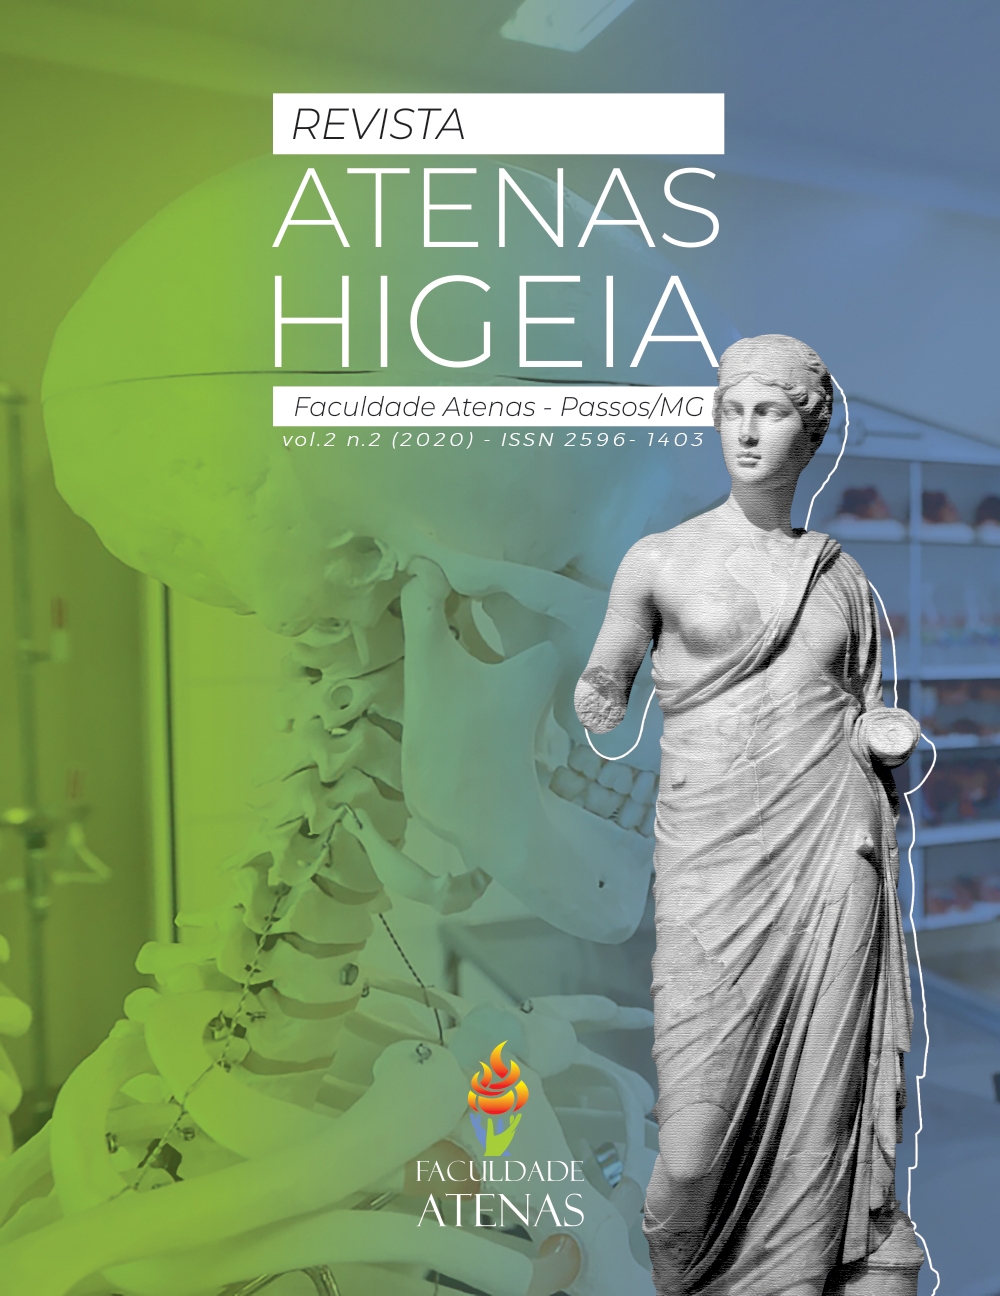 					Visualizar v. 2 n. 2 (2020): Revista Atenas Higeia
				